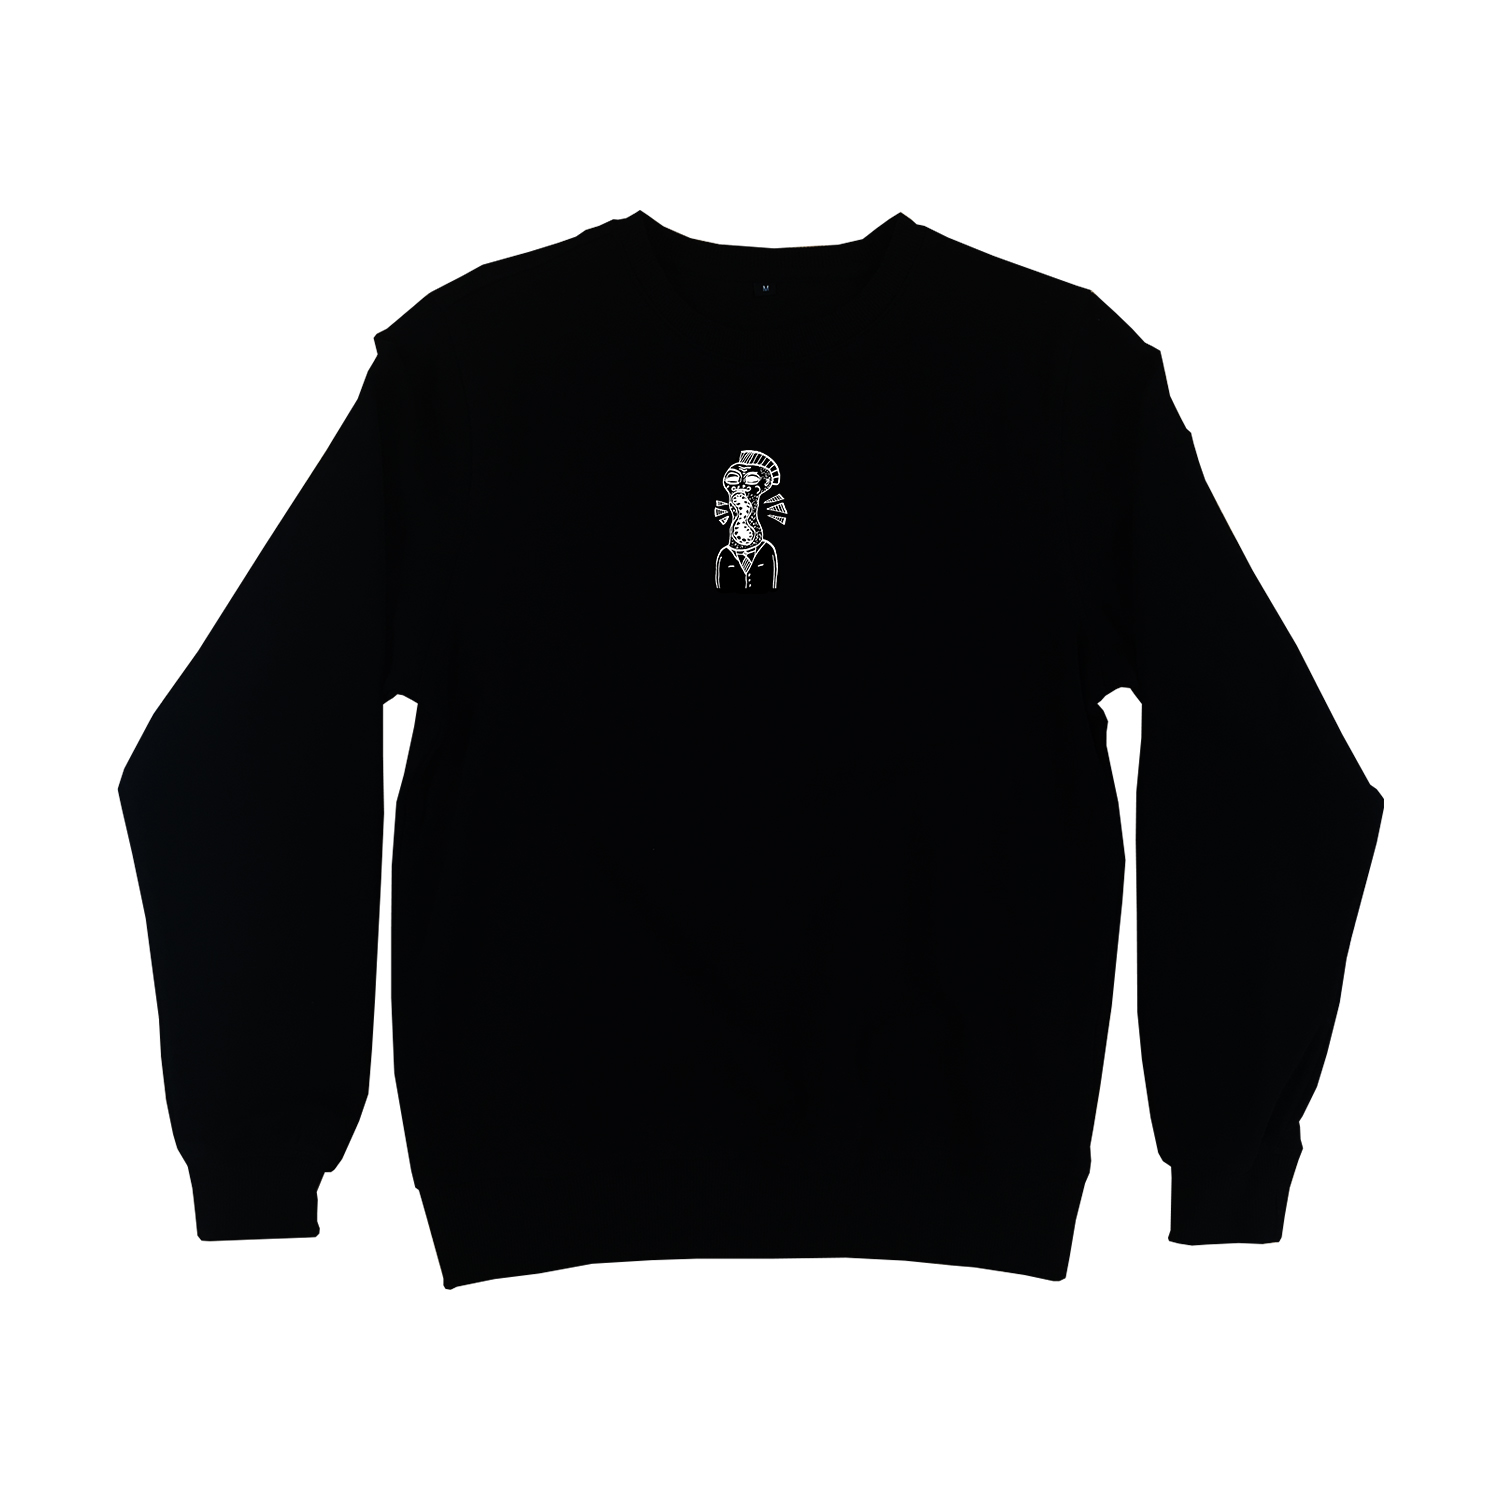 Sweater - zwart - voor - YOURLOOKSDONOTDEFINEME by Wesly van de Rijdt zwart - ONE AND ONE MAKES TWO